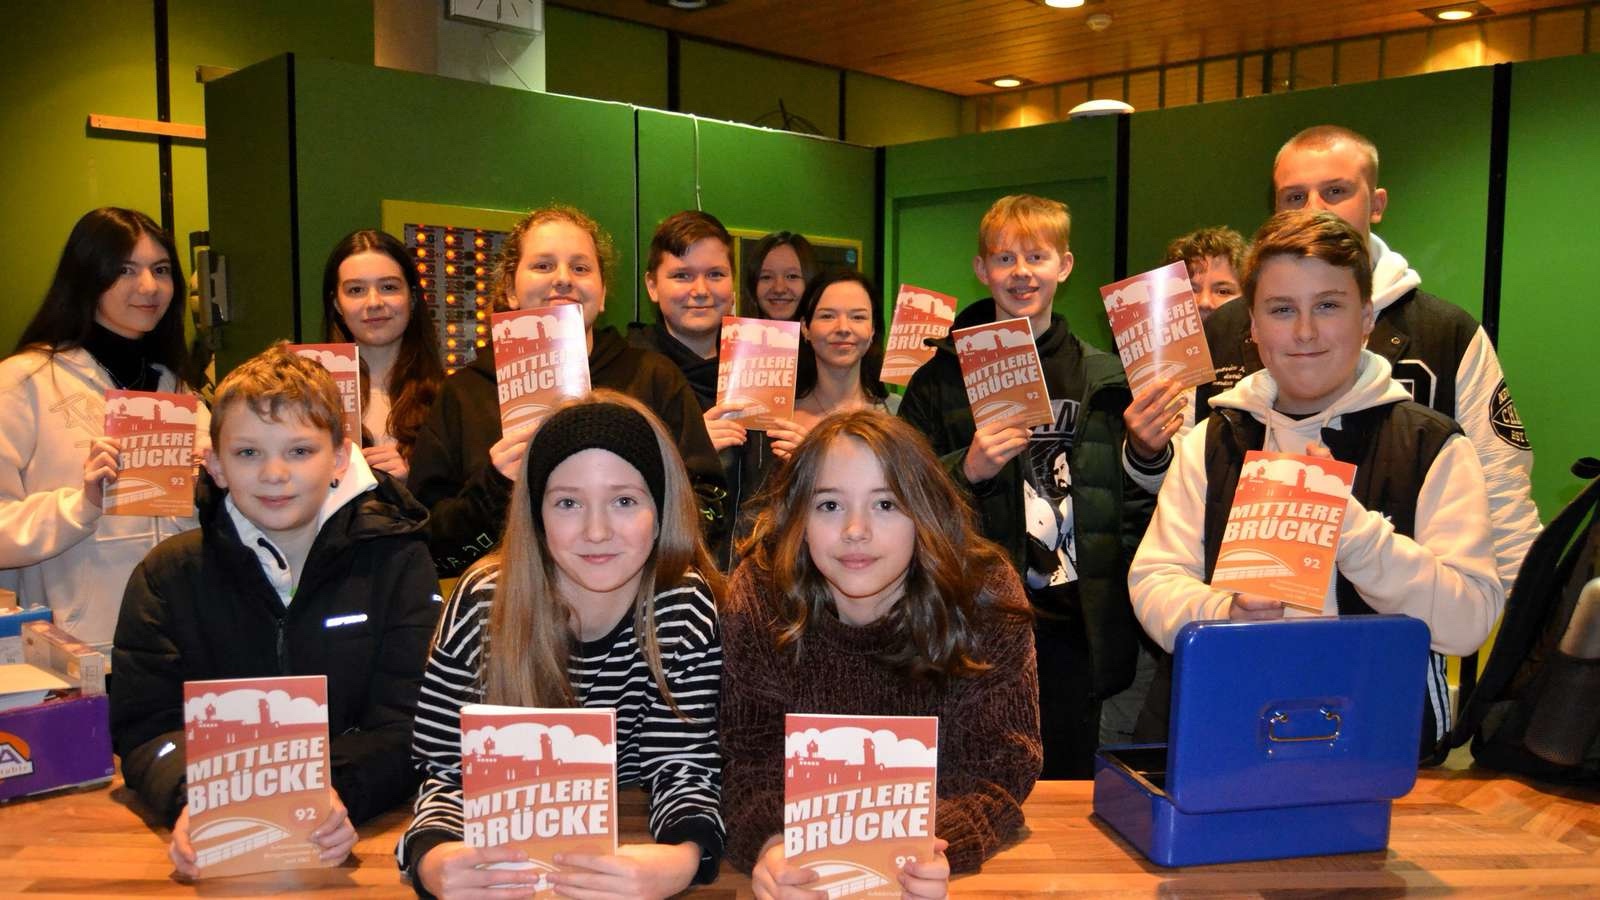 Kultige Schülerzeitung „Mittlere Brücke“ ab jetzt im Handel 